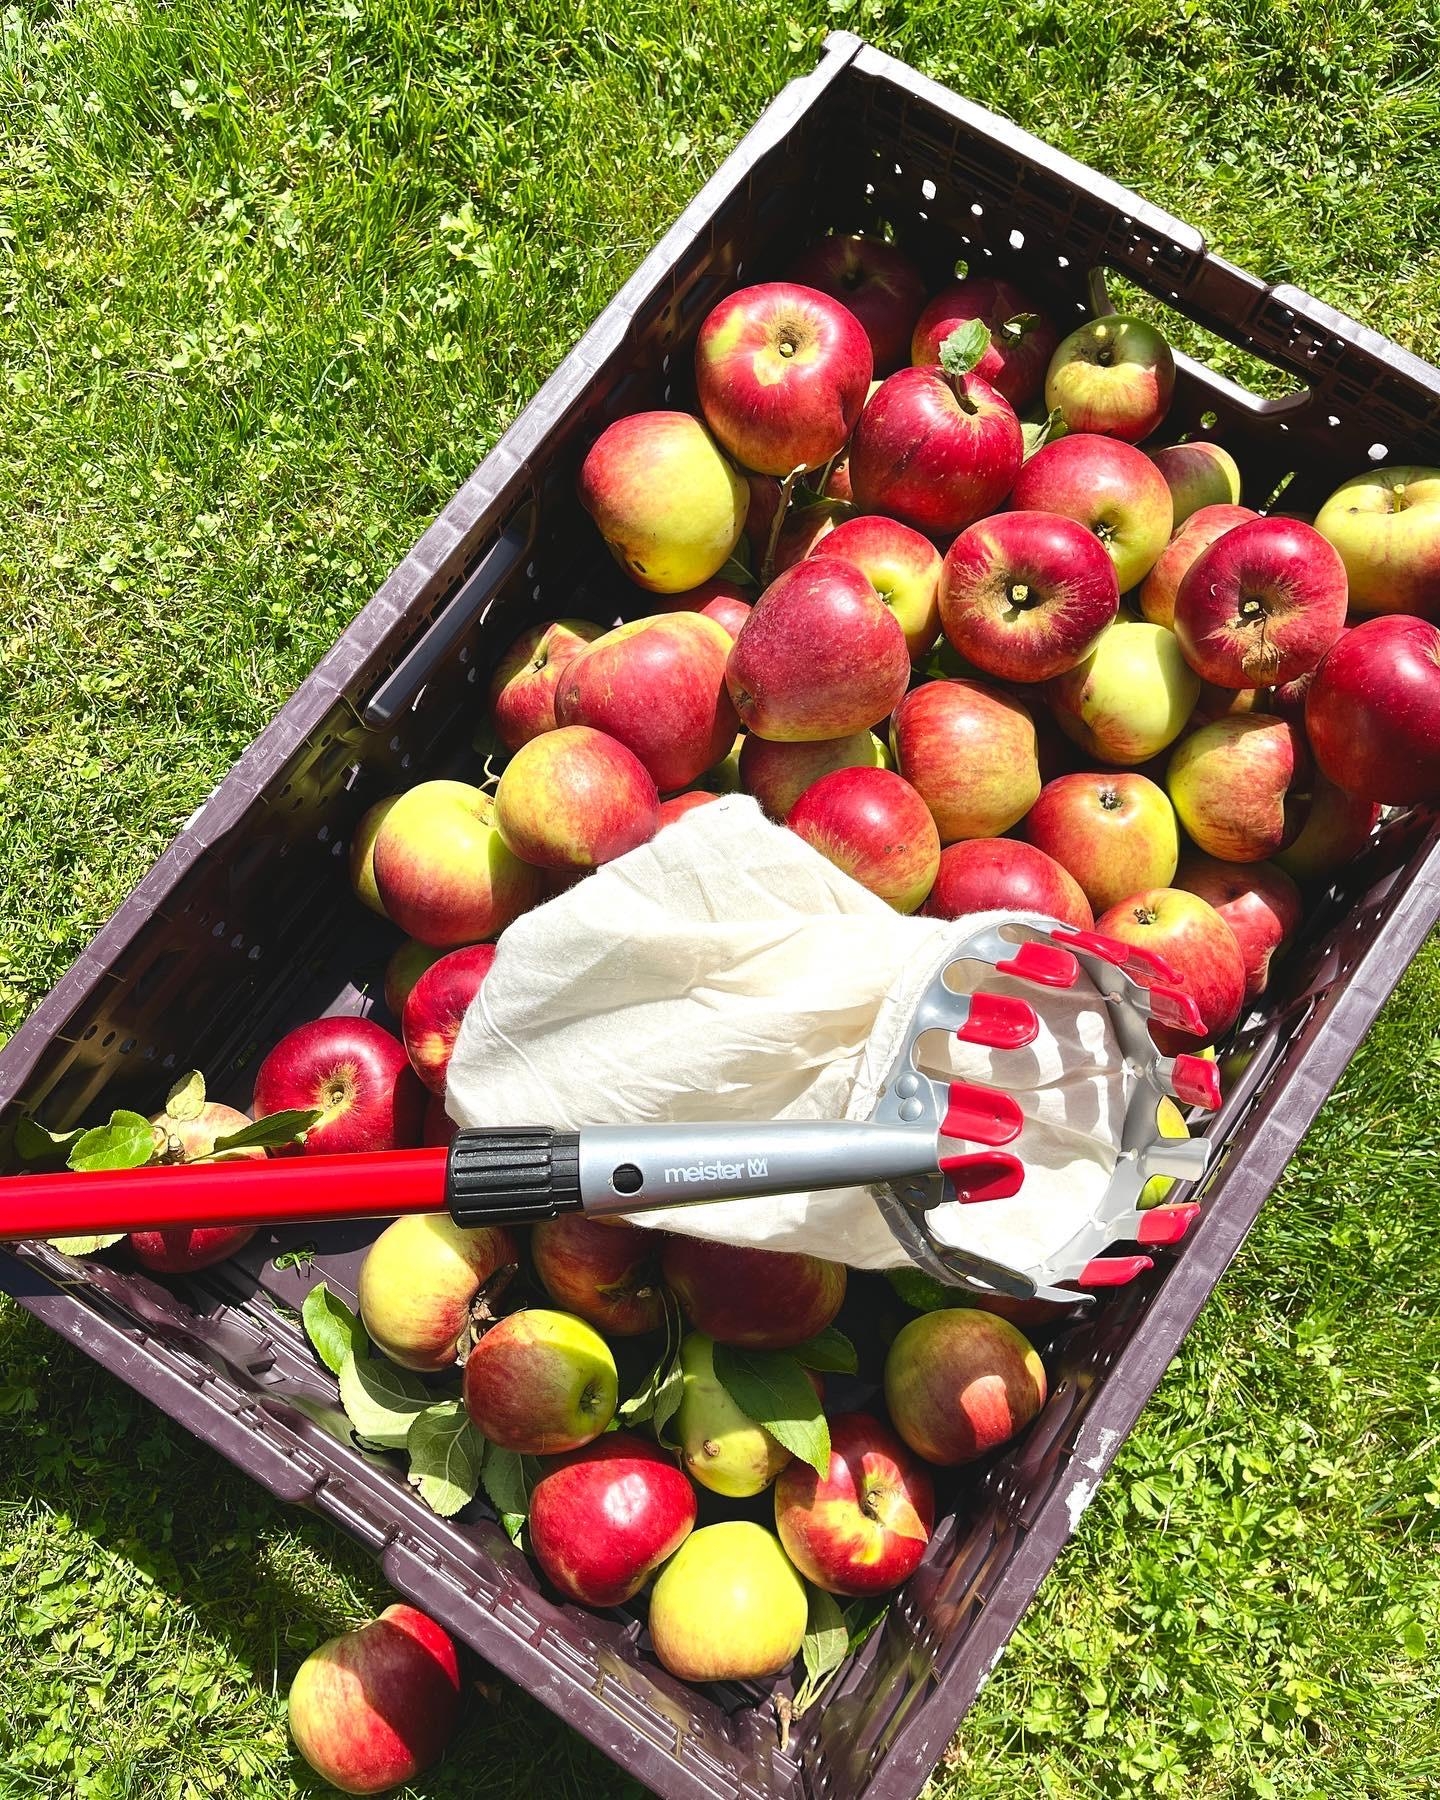 Apfelernte 🍎
#applepicking#landleben#apfelkuchen#apfelernte#gartenzeit#outdoorliving#garten#apfelbaum#wochenende